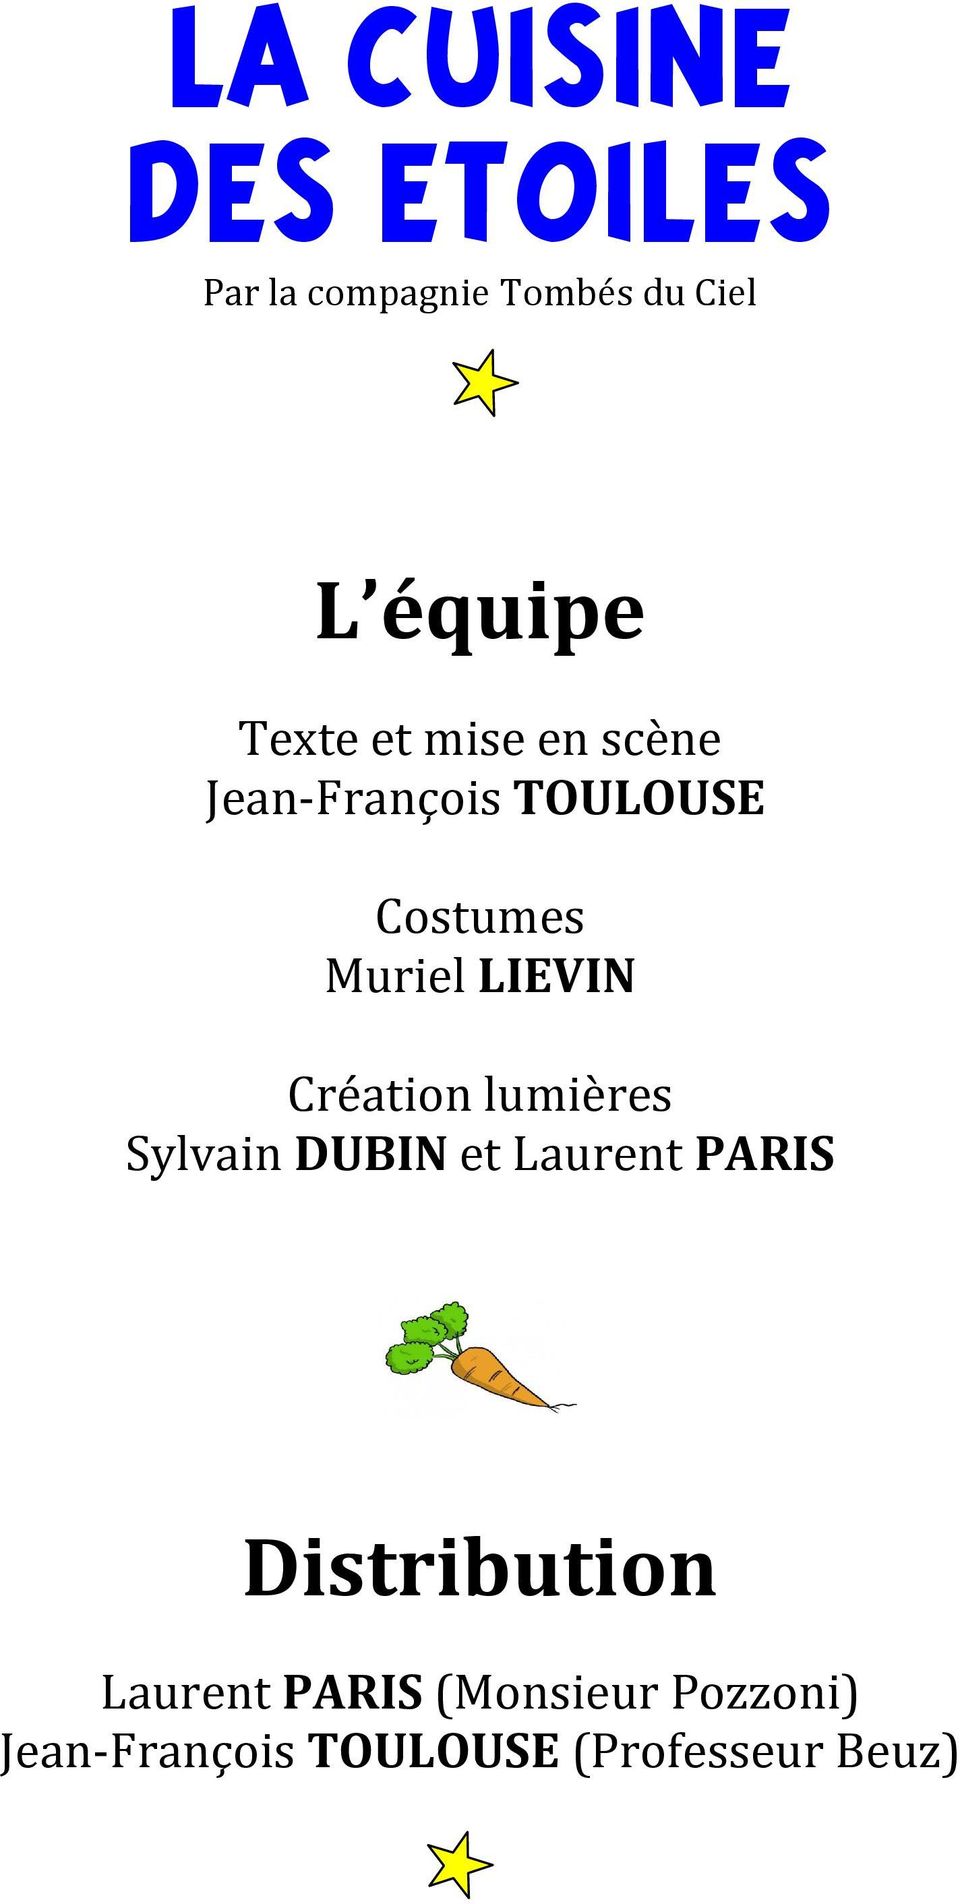 LIEVIN Création lumières Sylvain DUBIN et Laurent PARIS